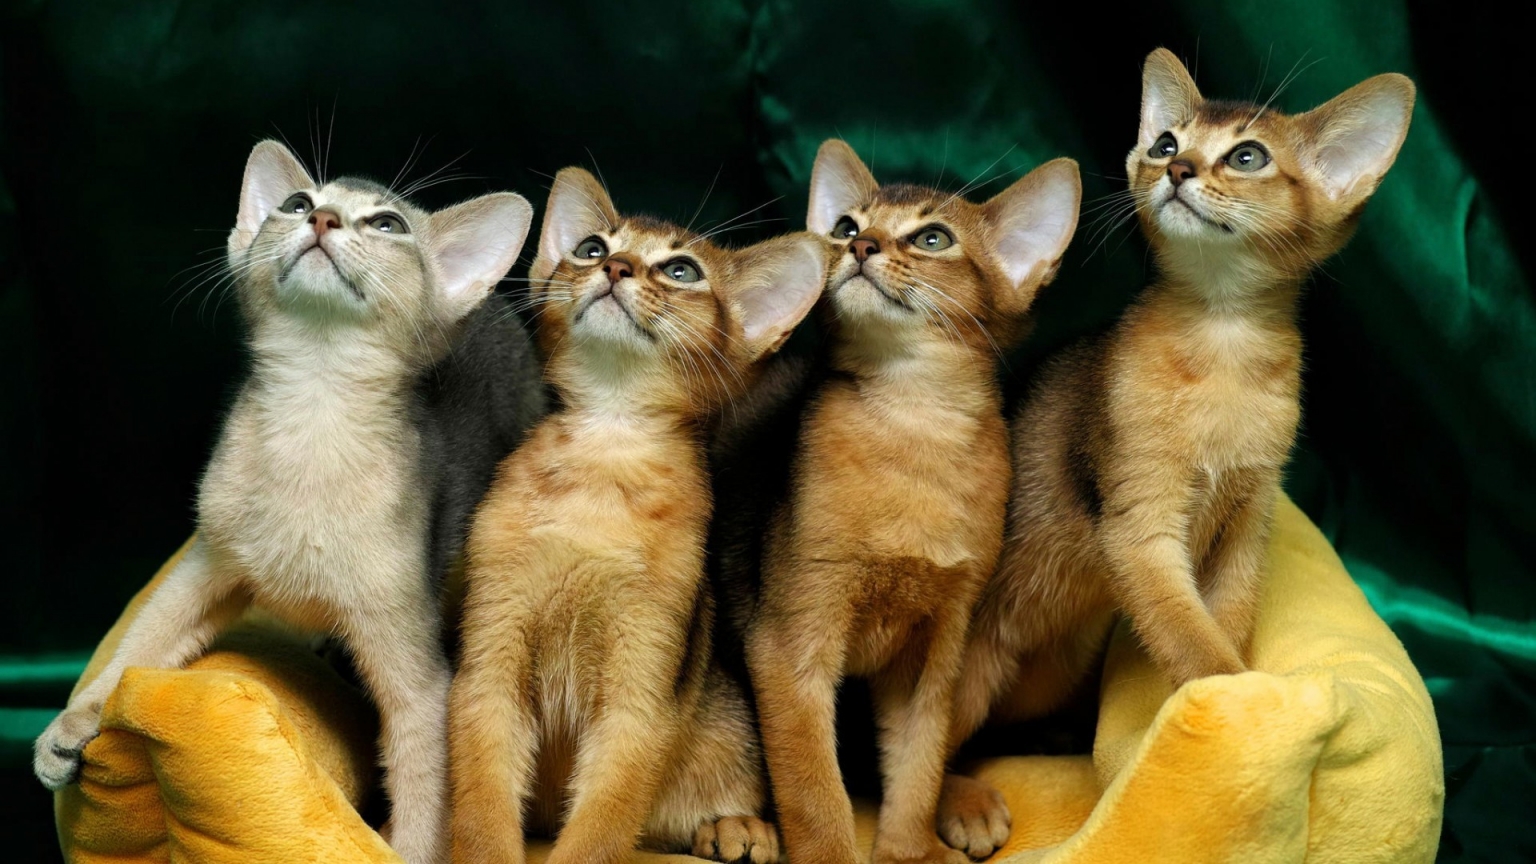 4 Cute Kittens for 1536 x 864 HDTV resolution